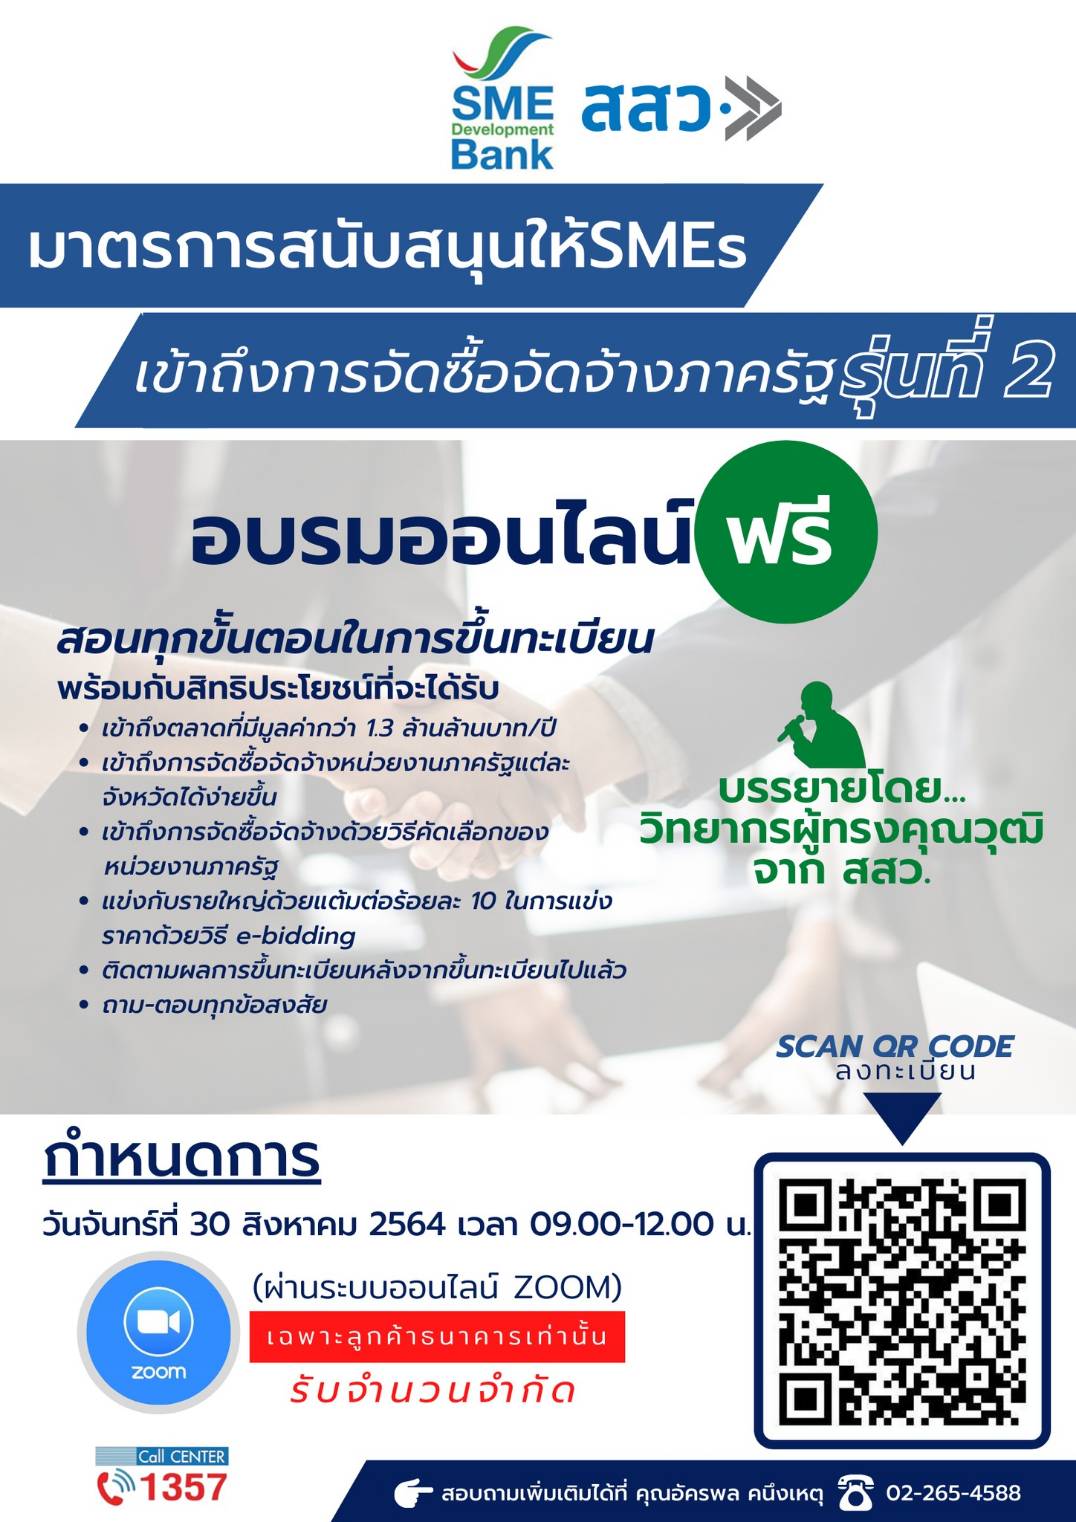 SME D Bank ผนึก สสว. หนุนเอสเอ็มอีไทย เชิญร่วมสัมมนาออนไลน์ ฟรี ติดปีกพาเข้าถึง ‘การจัดซื้อจัดจ้างภาครัฐ’ กำลังซื้อสูงปีละ 1.3 ล้านล้านบาท